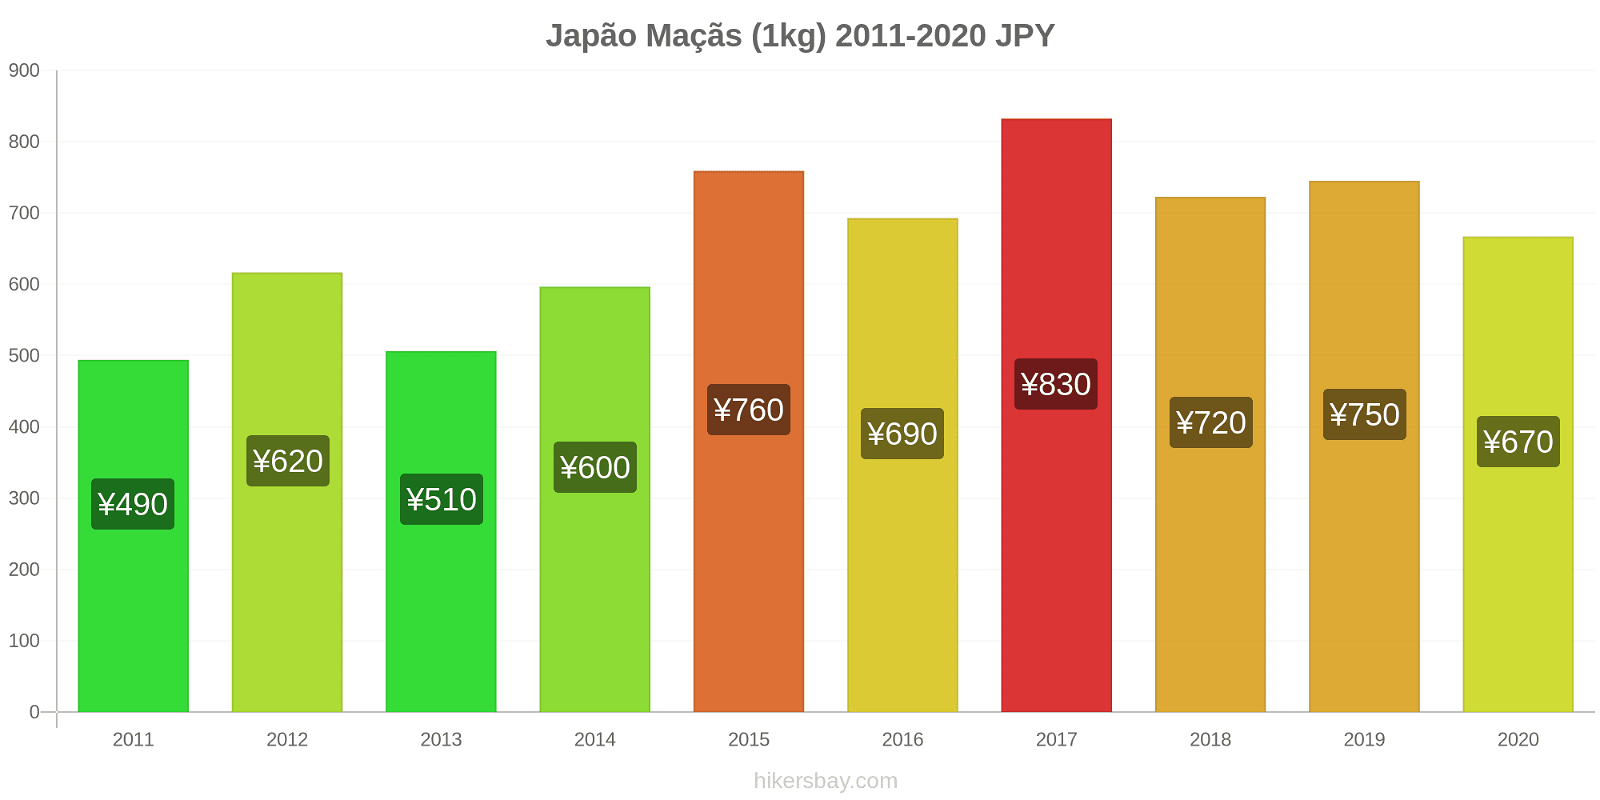 Japão variação de preço Maçãs (1kg) hikersbay.com